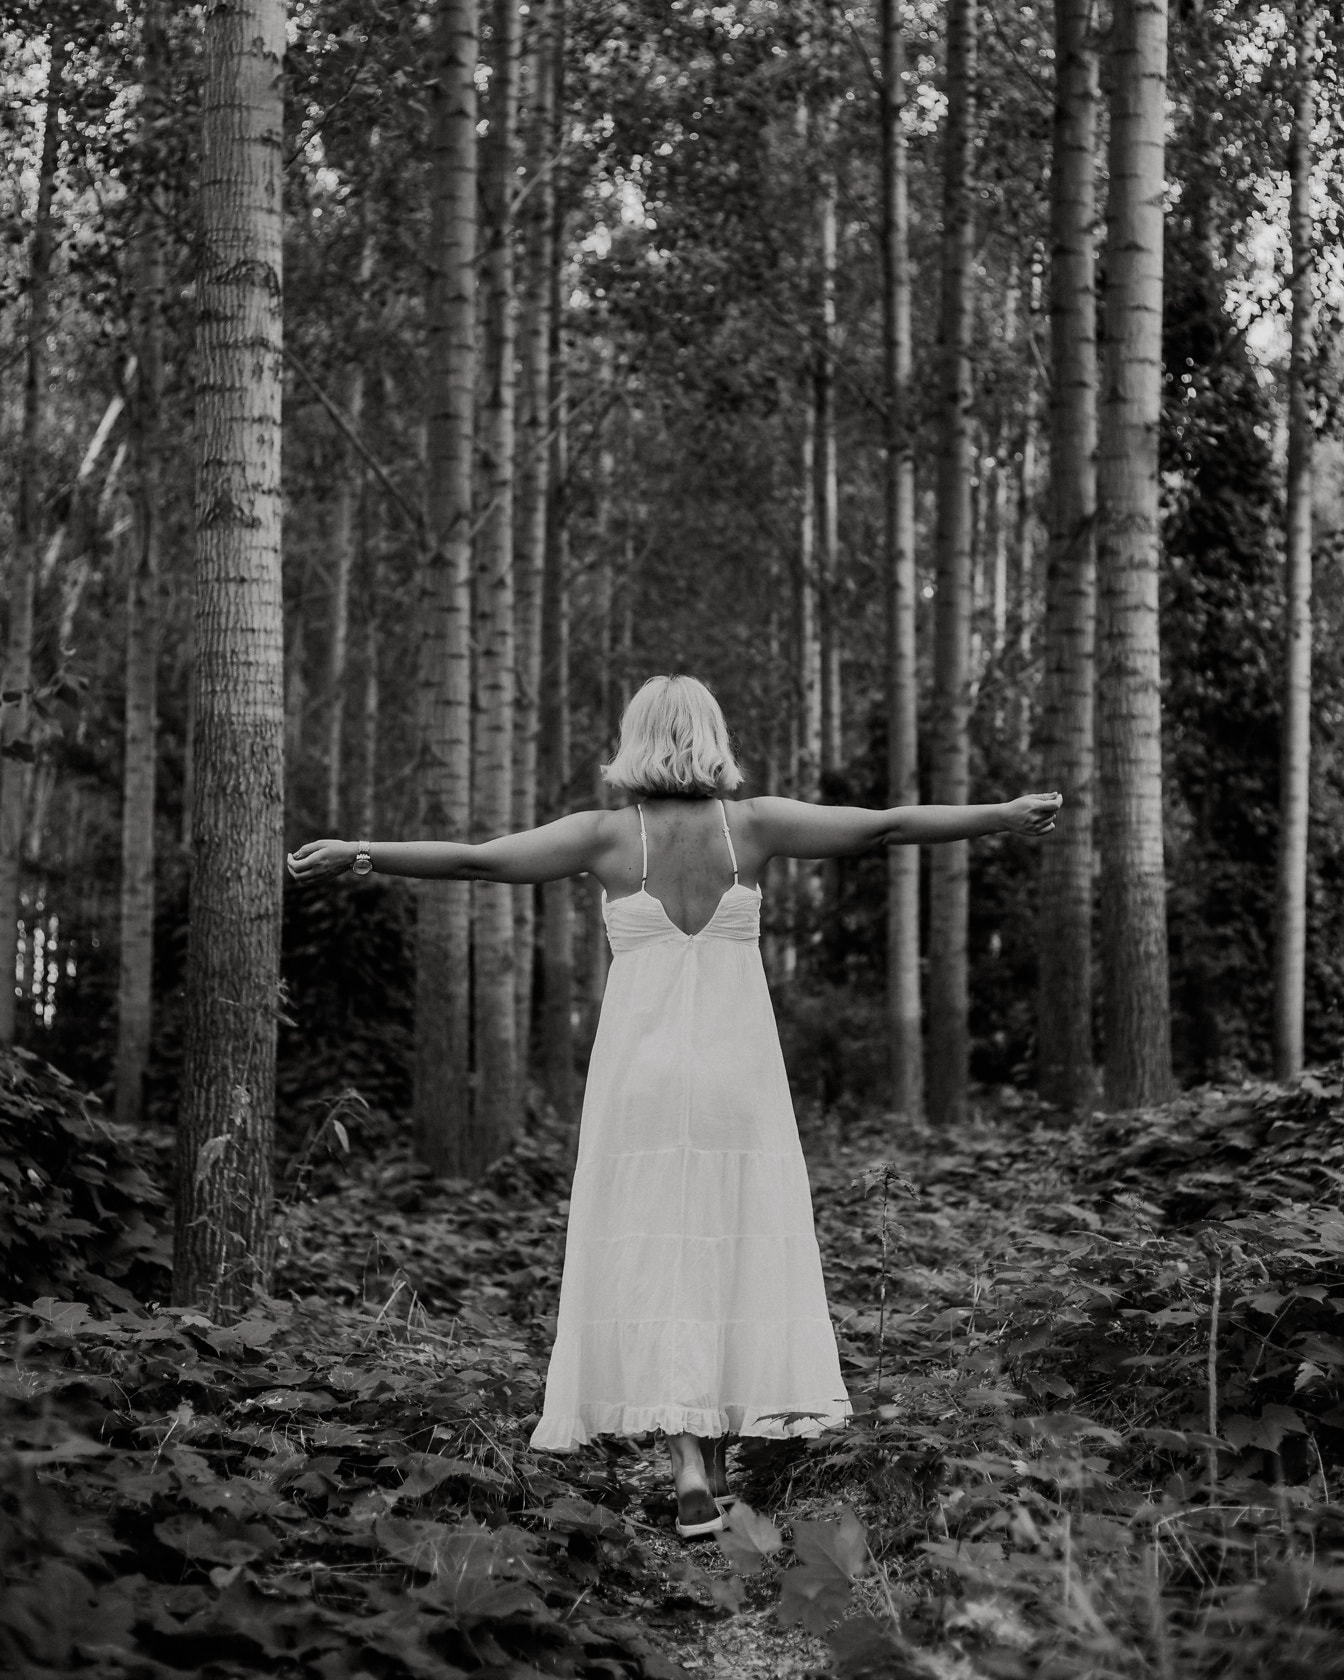 Veselá žena v bielych šatách v lesnej monochromatickej fotografii